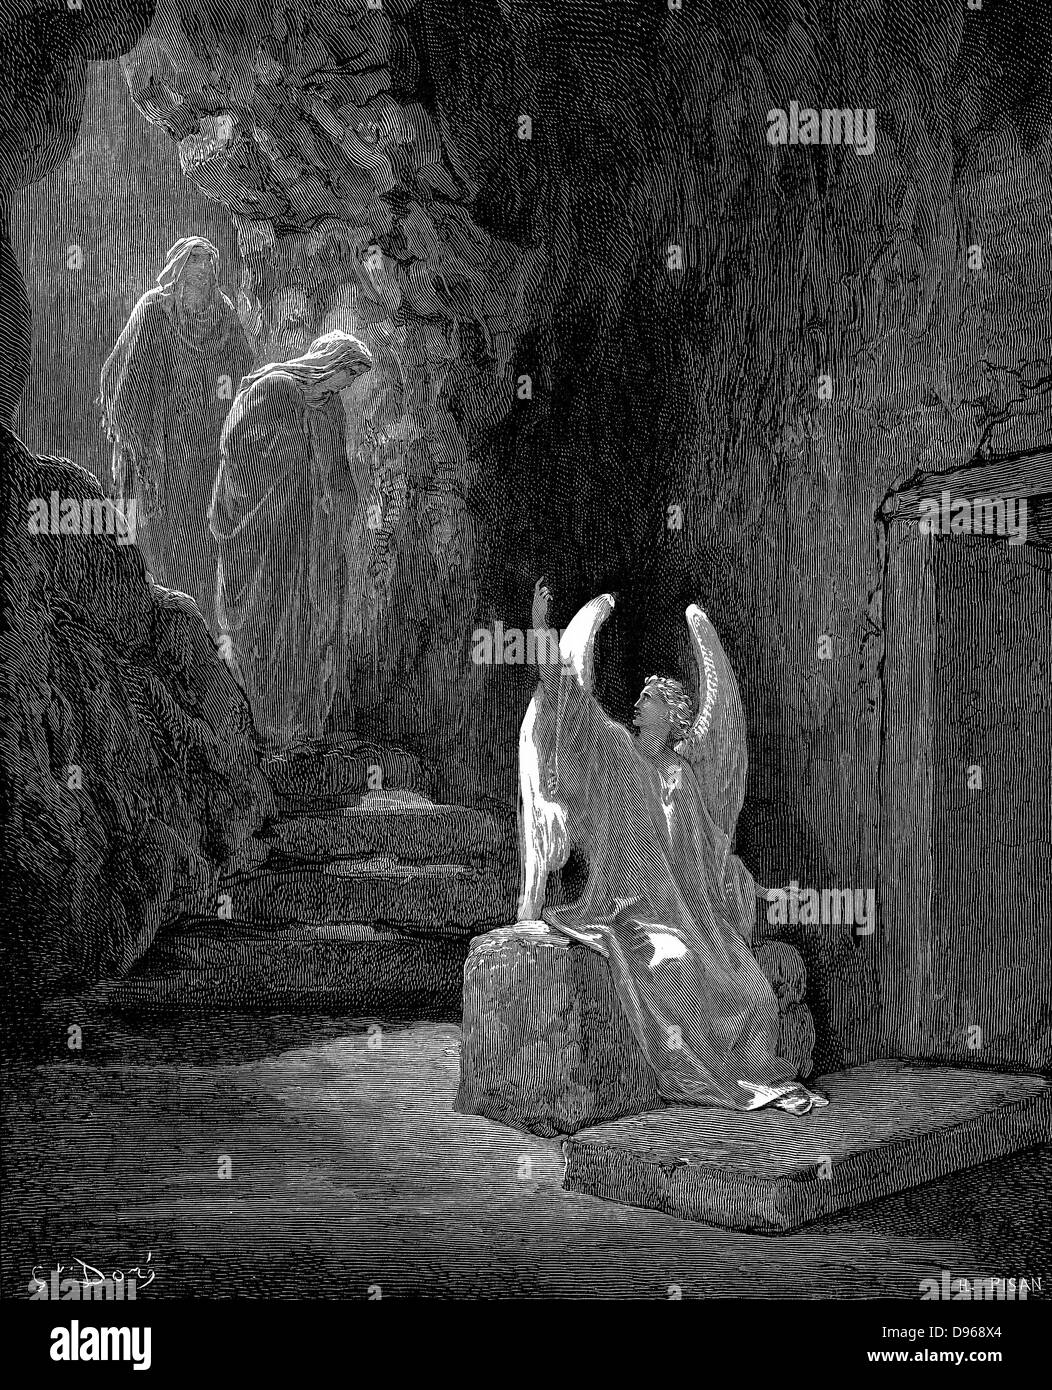 Angelo mostra Maria Maddalena e 'l'altra Maria' tomba vuota di Cristo. Contrassegnare 16.5. Da Gustave Dore illustrato "bibbia" 1865-6. Incisione su legno Foto Stock